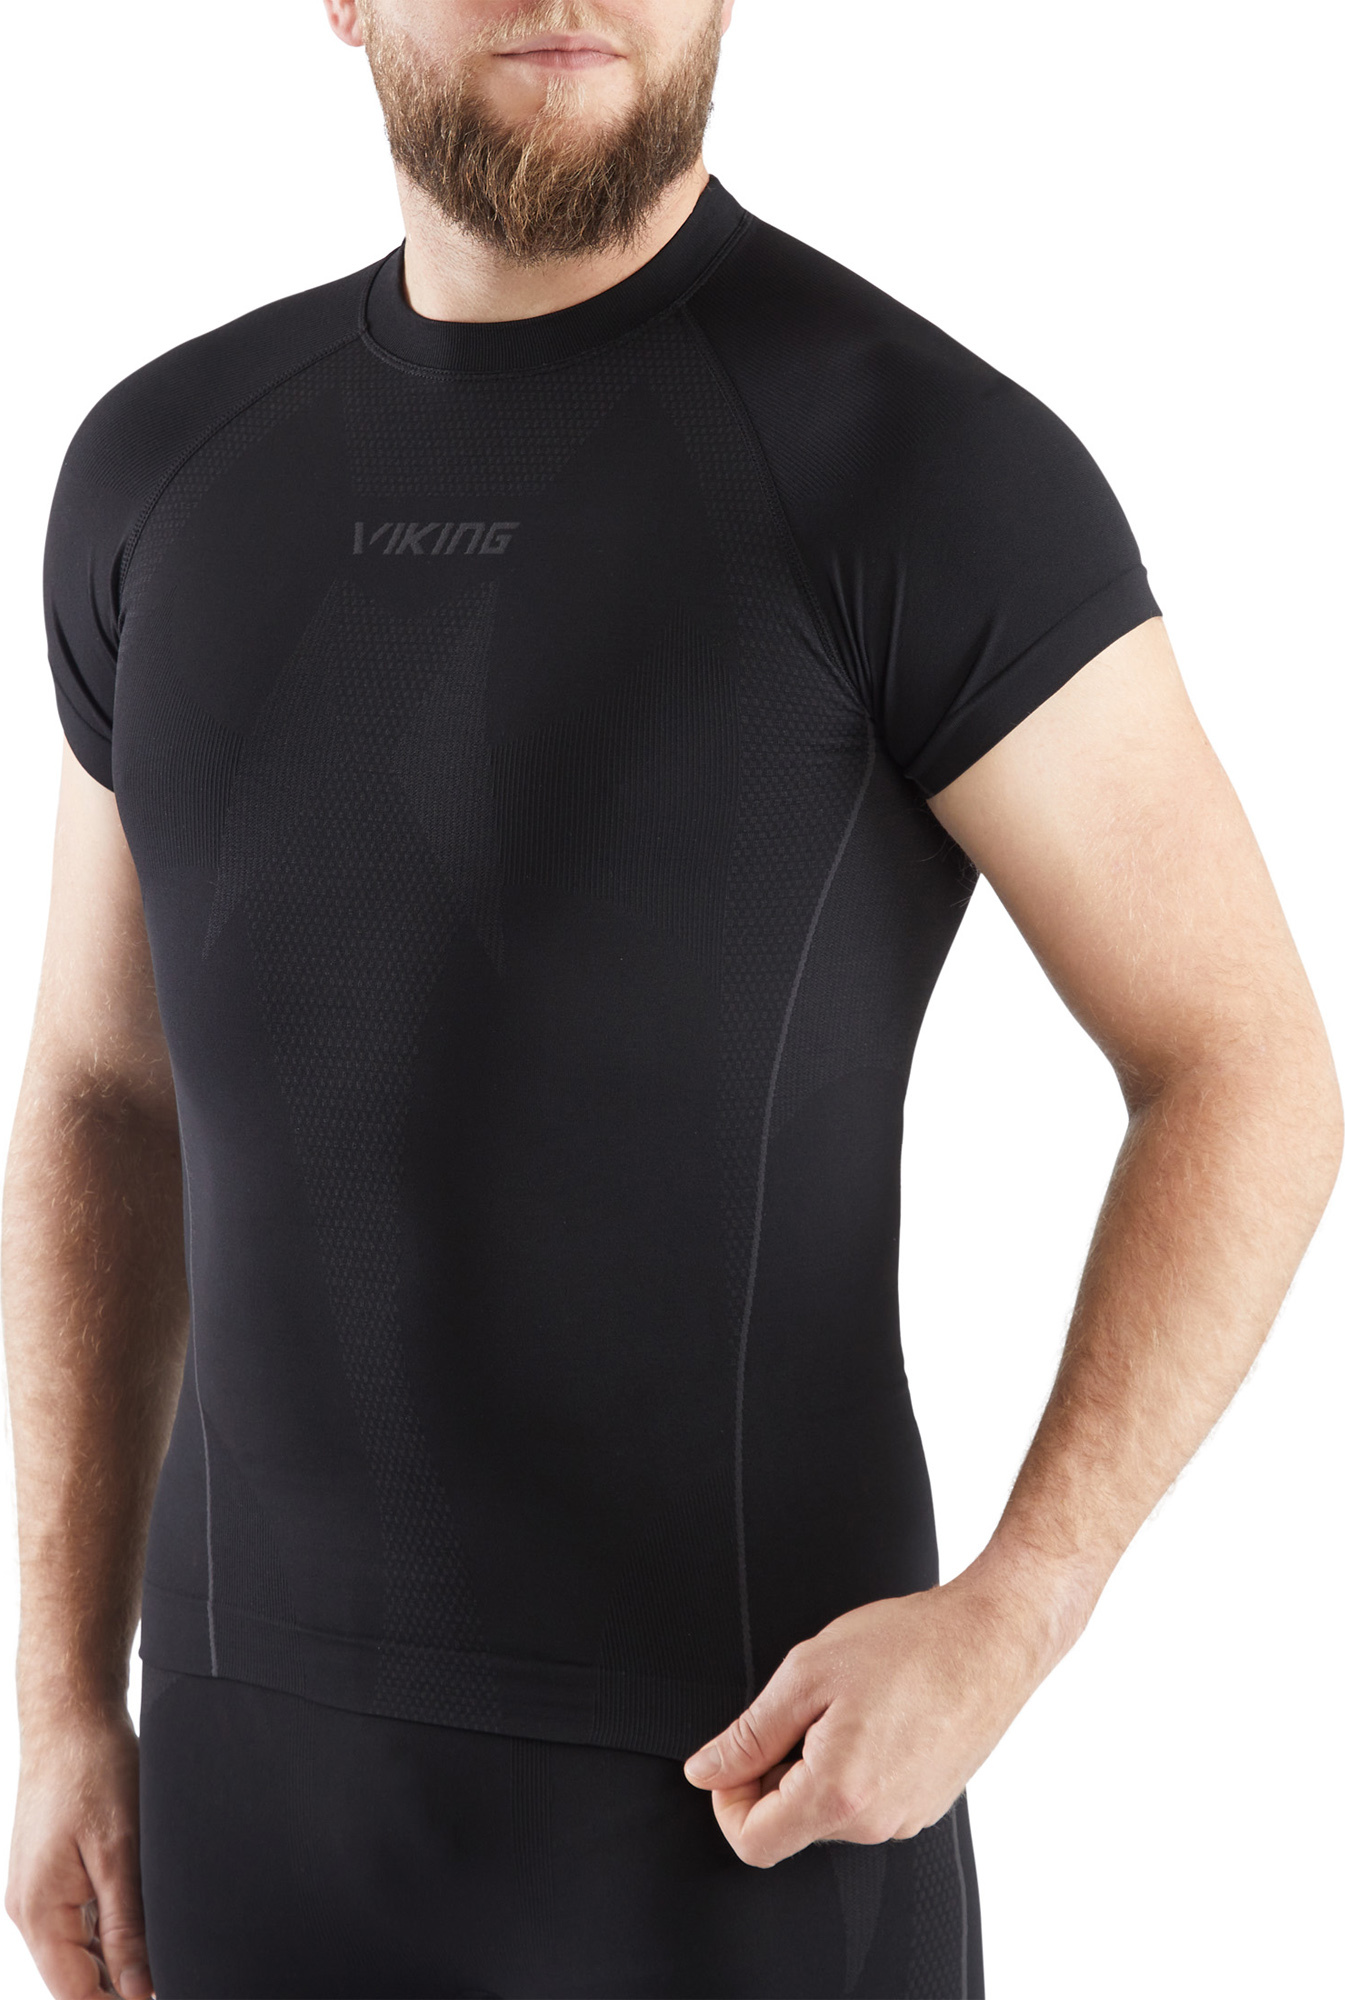 Pánské triko s krátkým rukávem VIKING Eiger Top černá Velikost: L